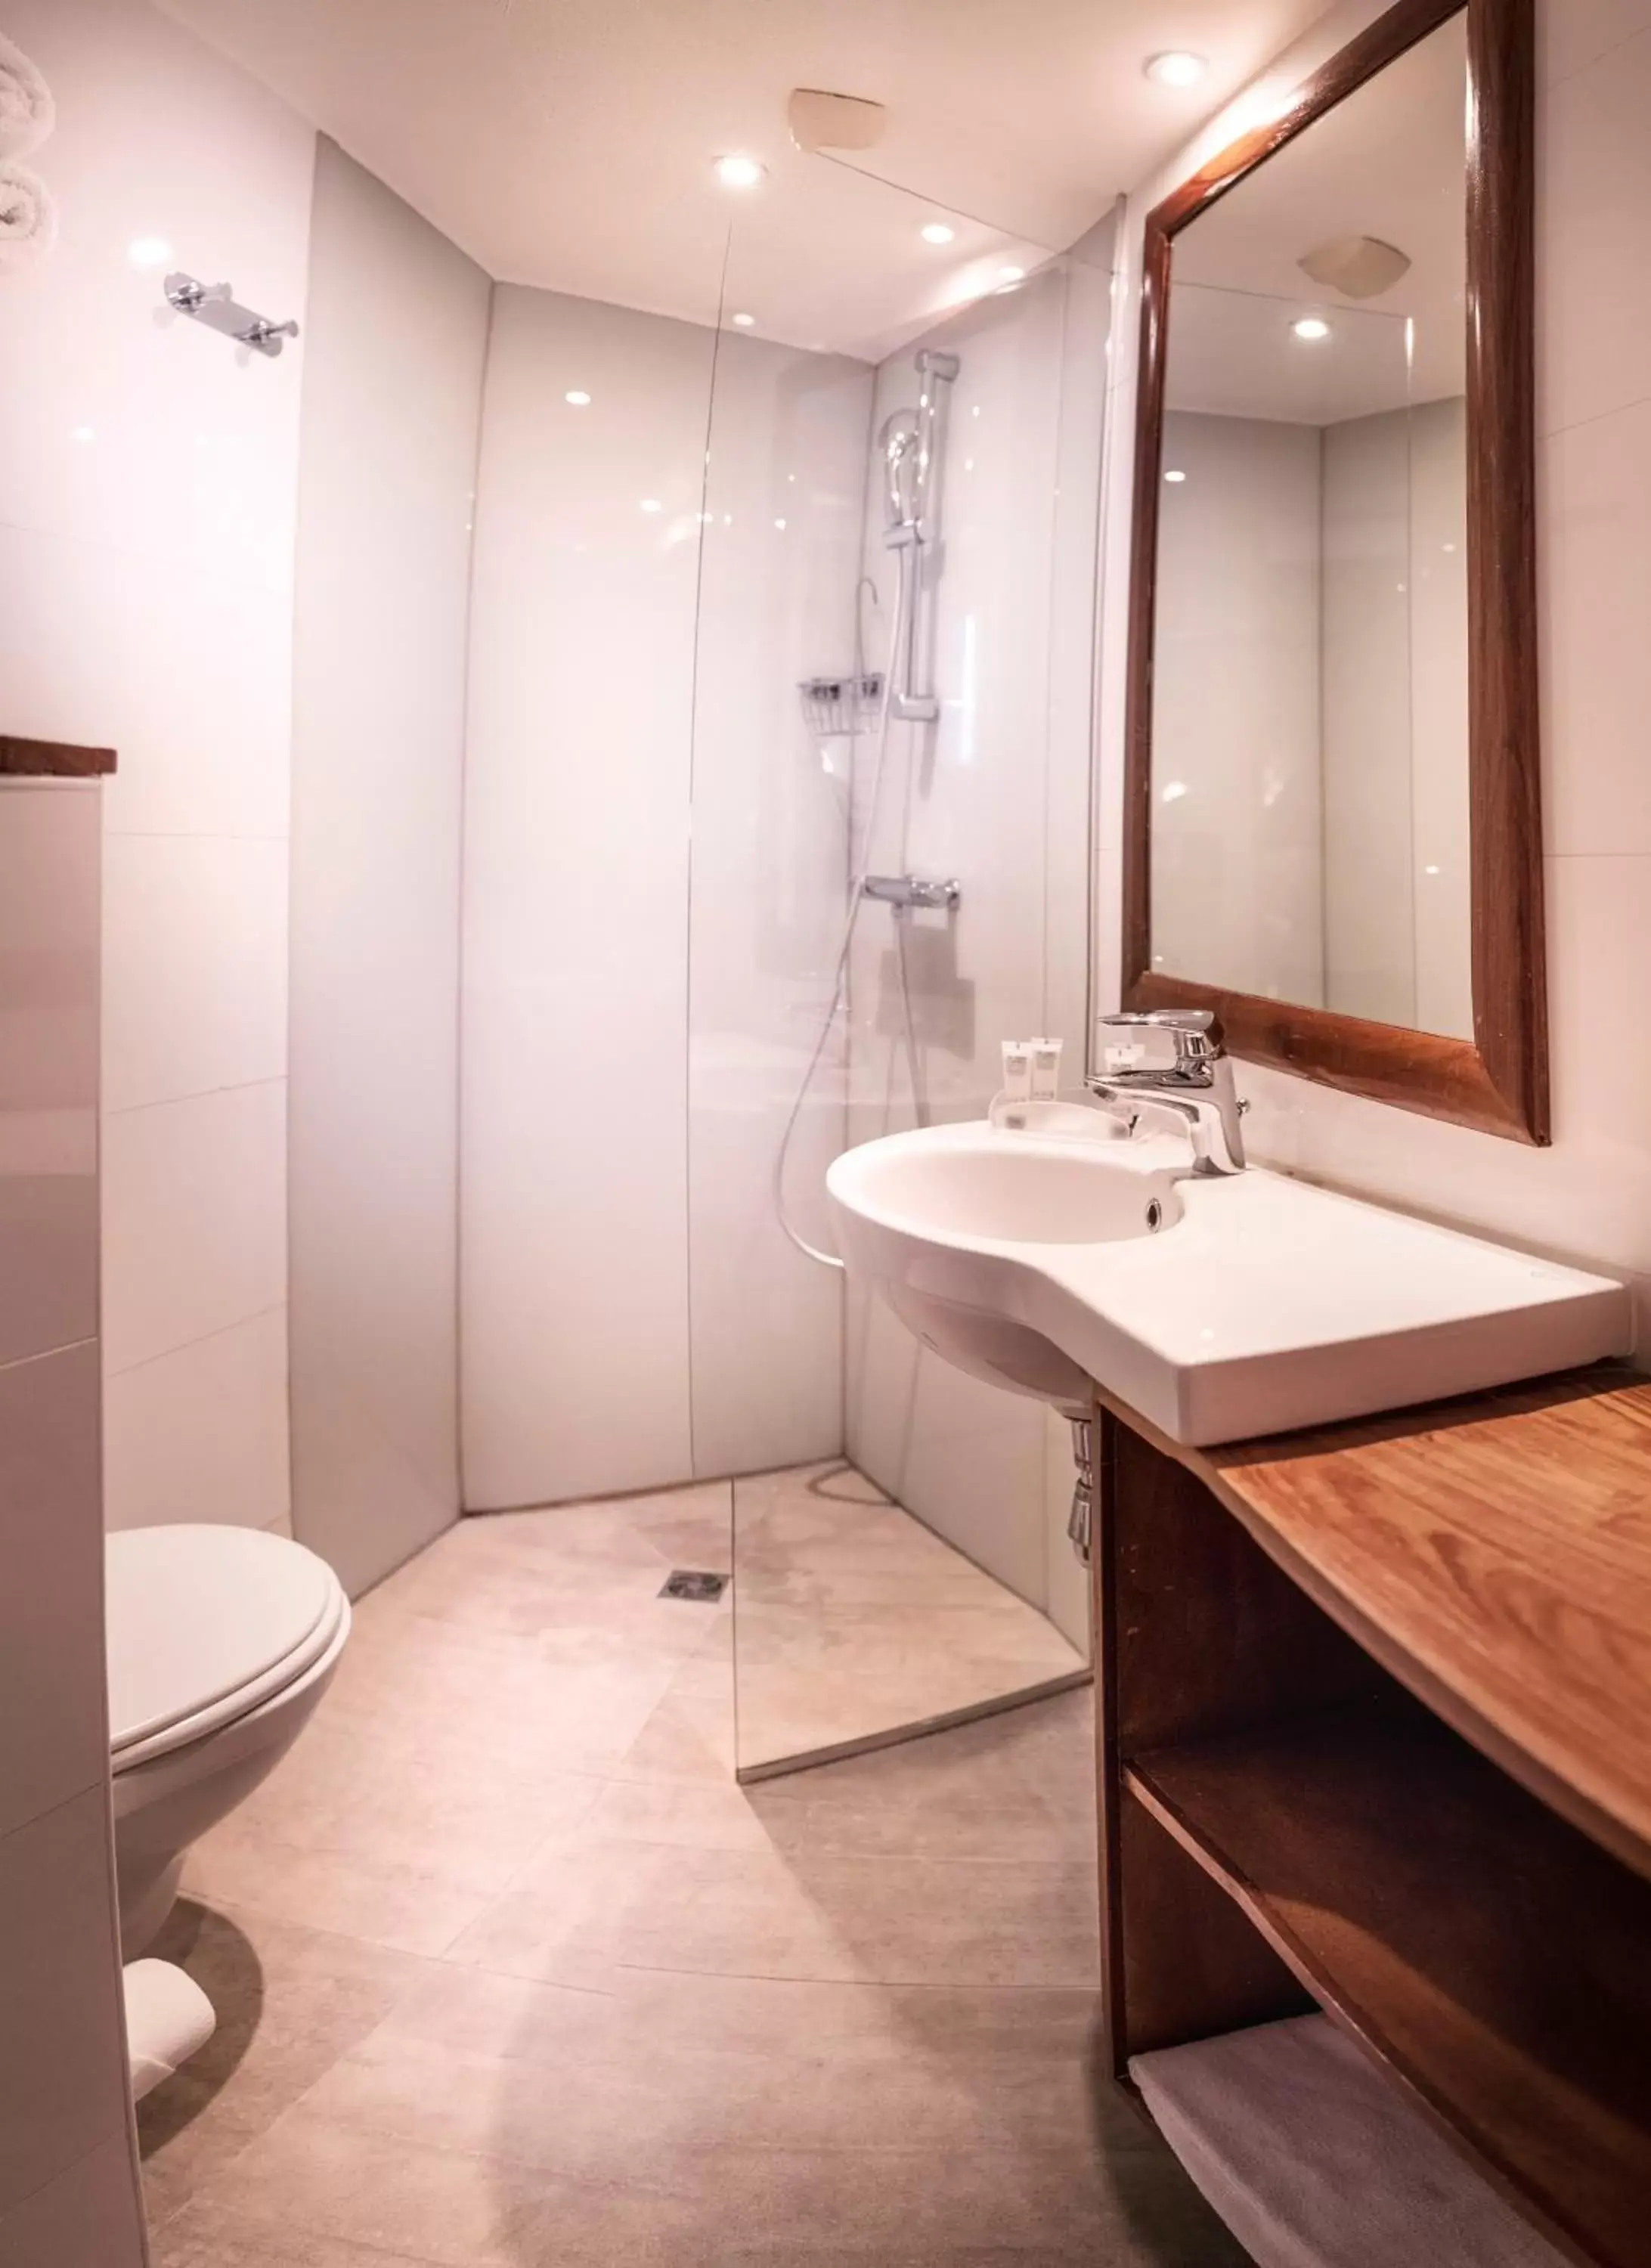 Property building, Bathroom in Best Western Aramis Saint Germain